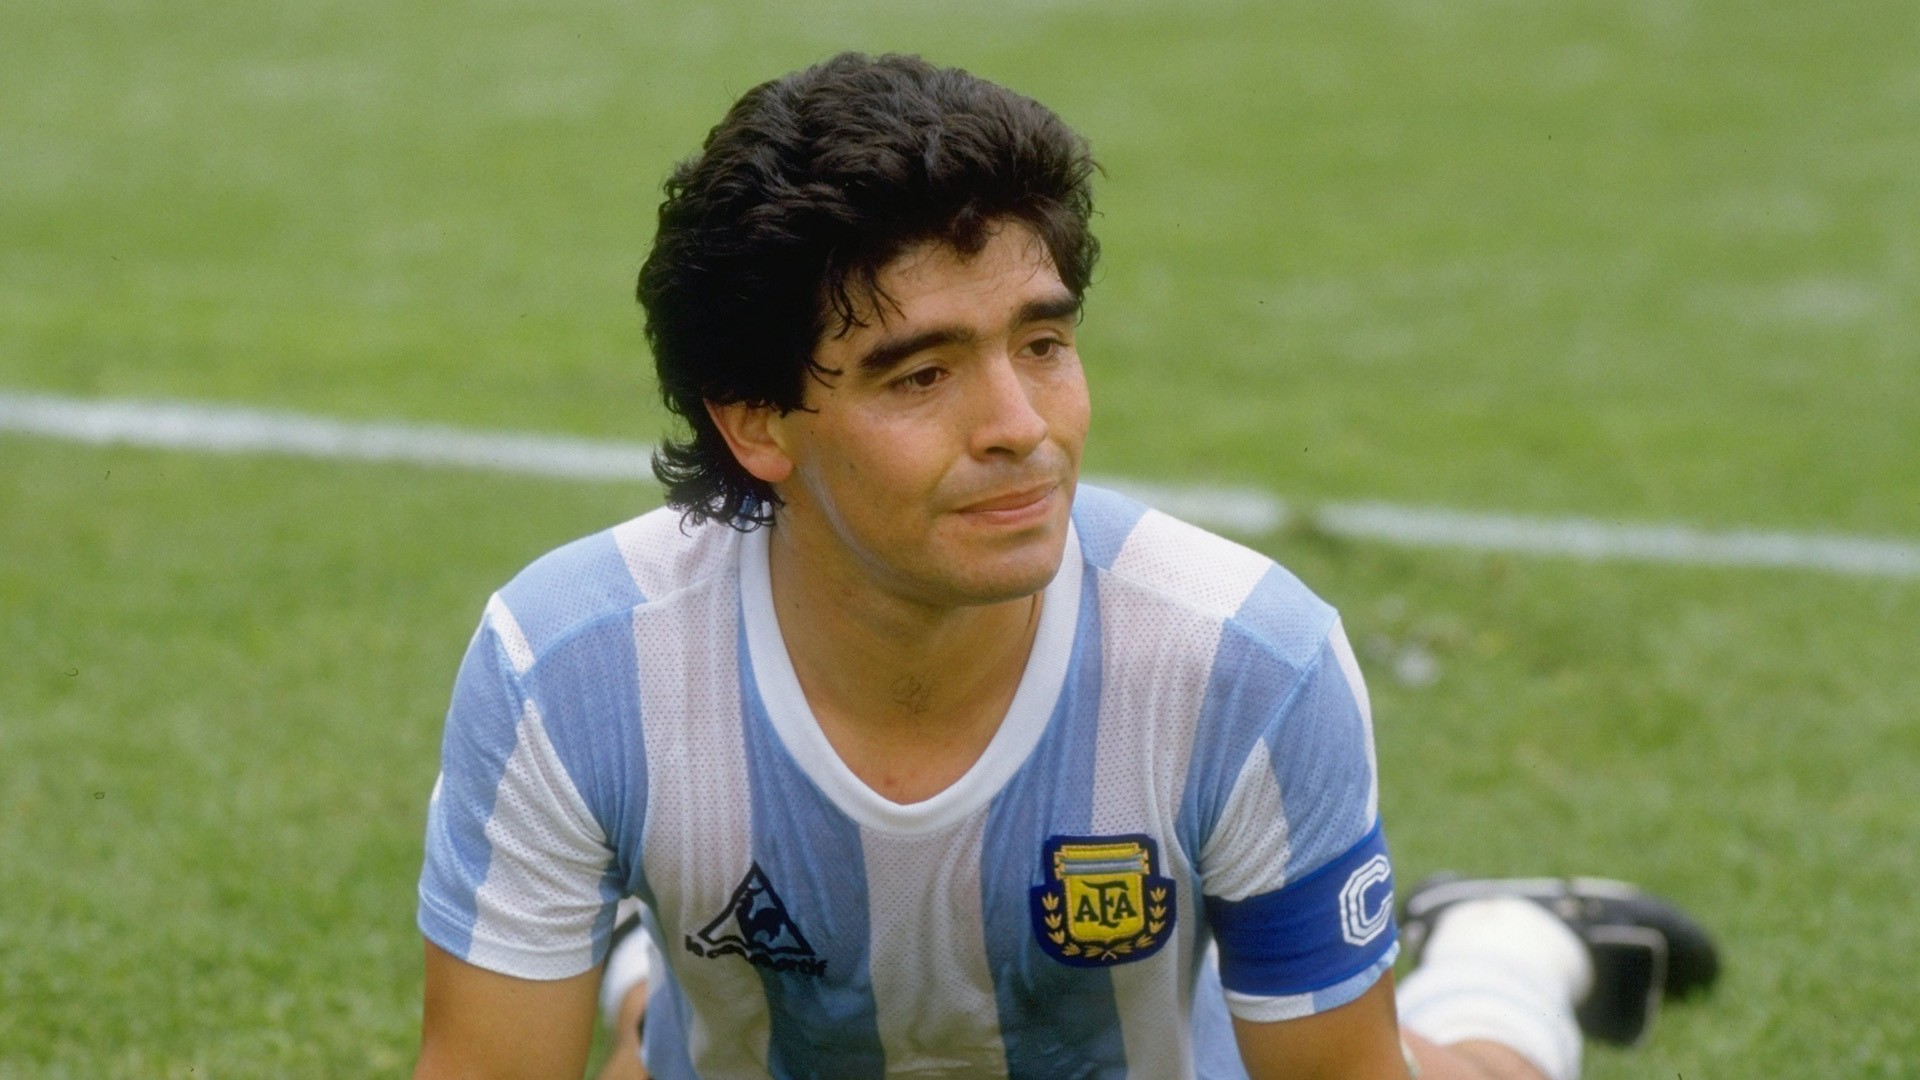 Maradona's Official Argentina Signed Shirt, 1986 - CharityStars